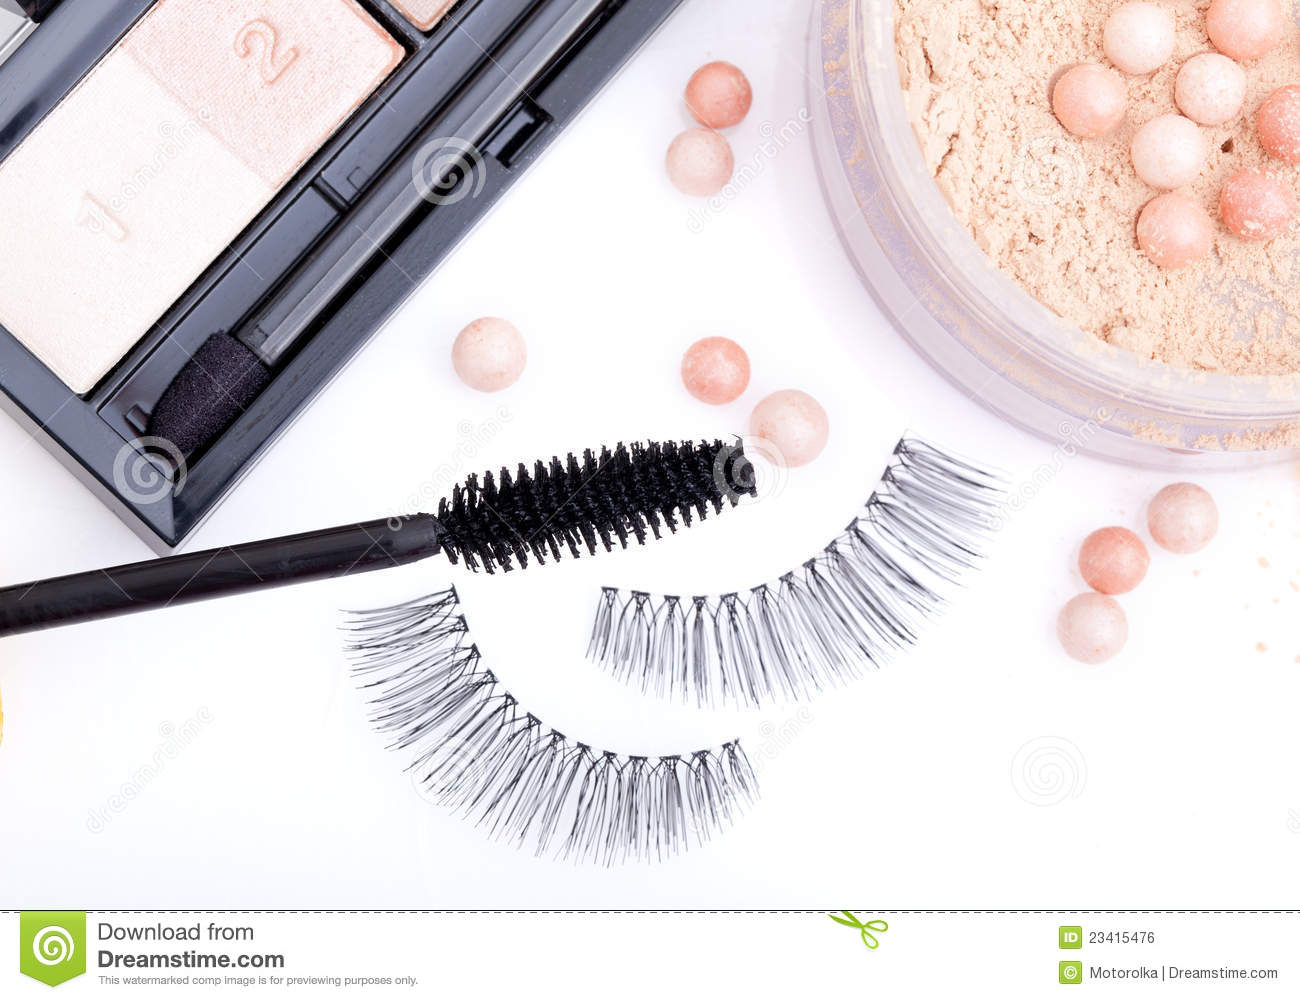 Black False Eyelashes With Mascara And Powder Royalty Free Stock Image